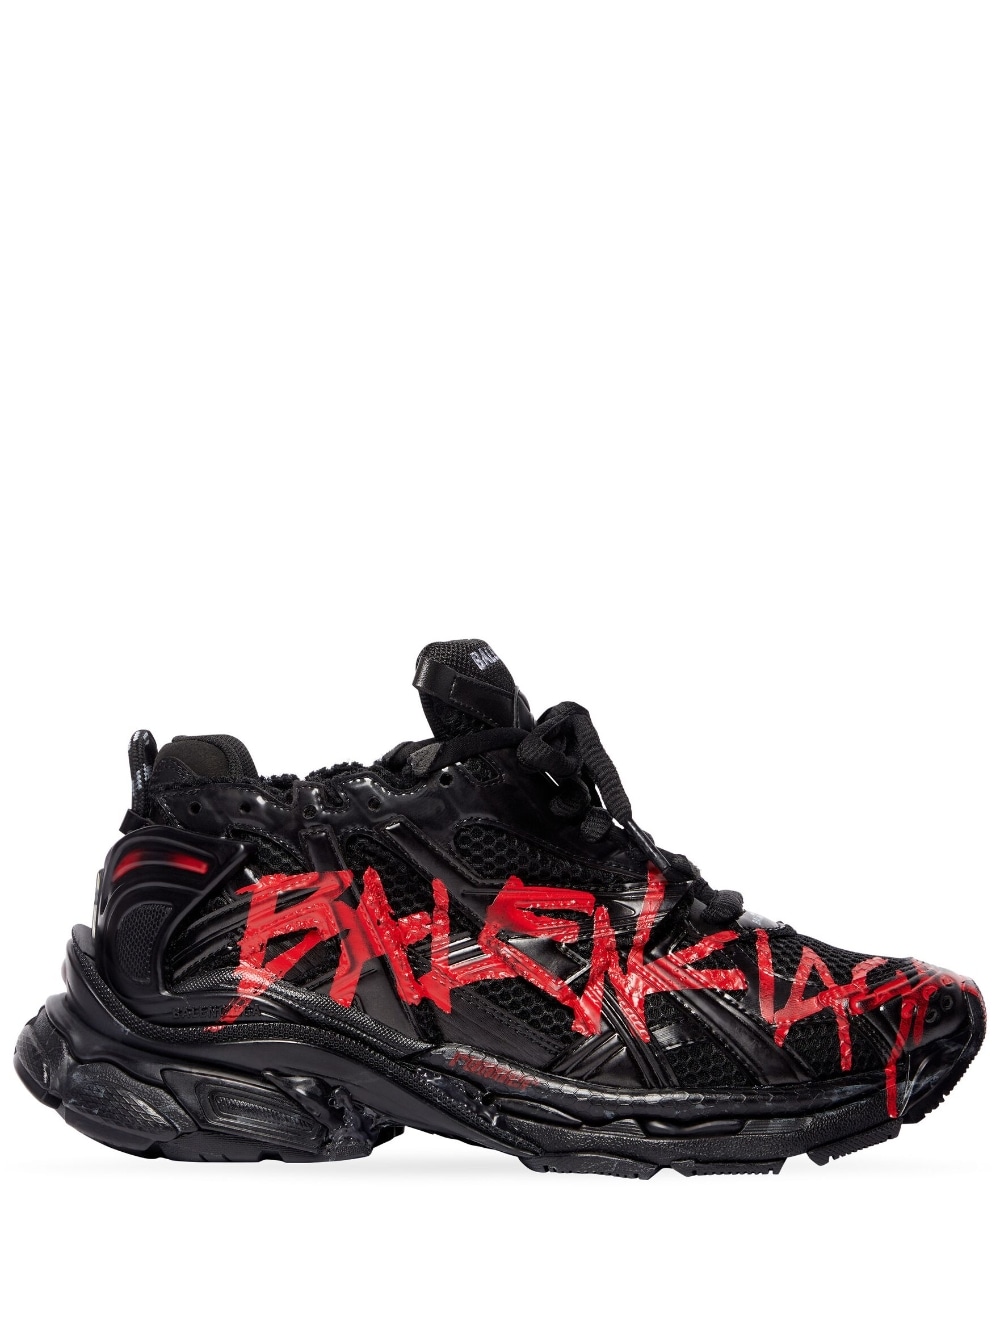 Balenciaga Graffiti Runner sneakers - Black